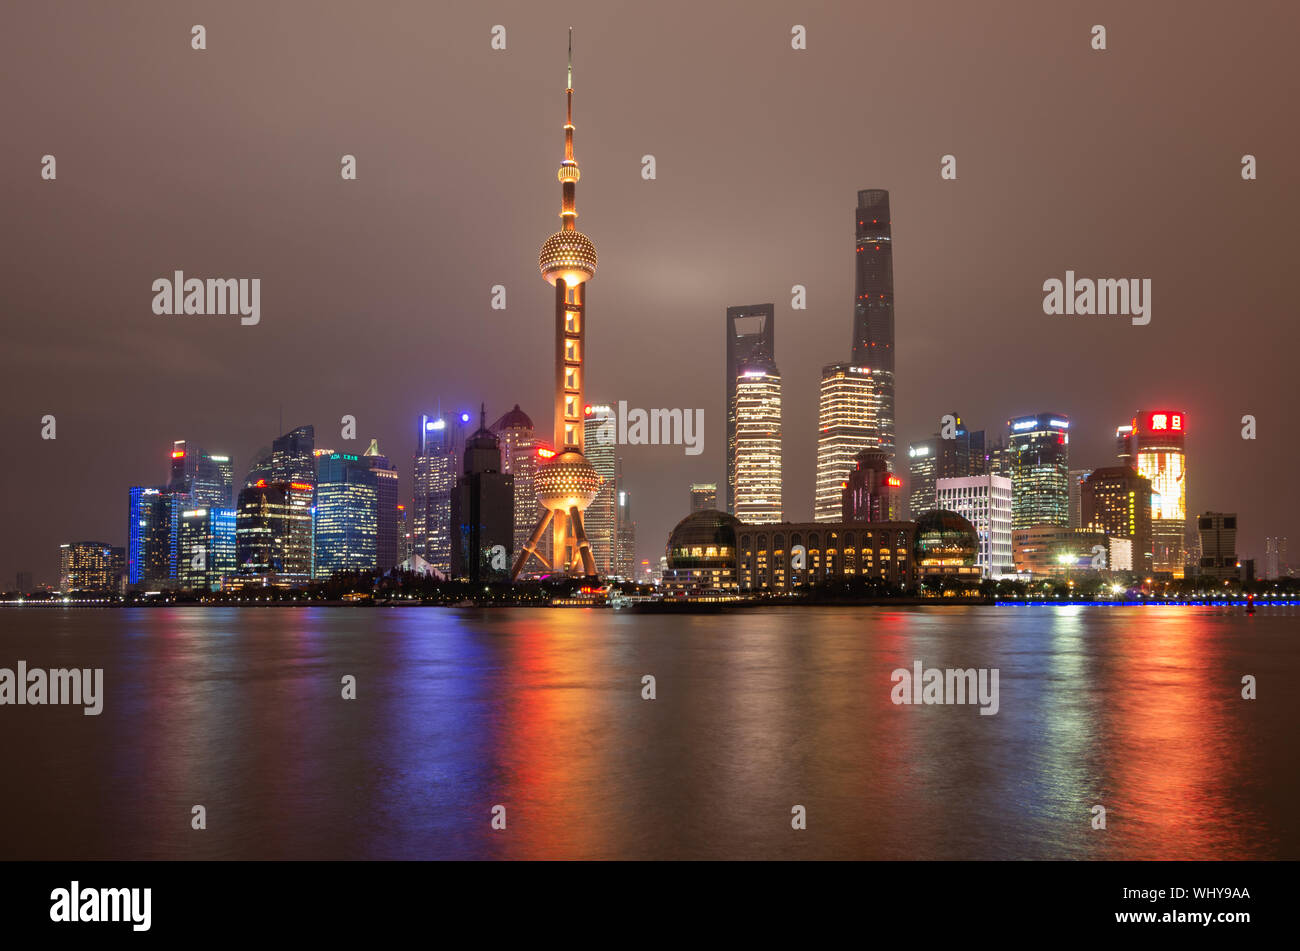 Shanghai Pudong skyline della città di notte con la Torre della TV Perla Orientale e riflessi di luce del fiume Huangpu, Shanghai, Cina Foto Stock